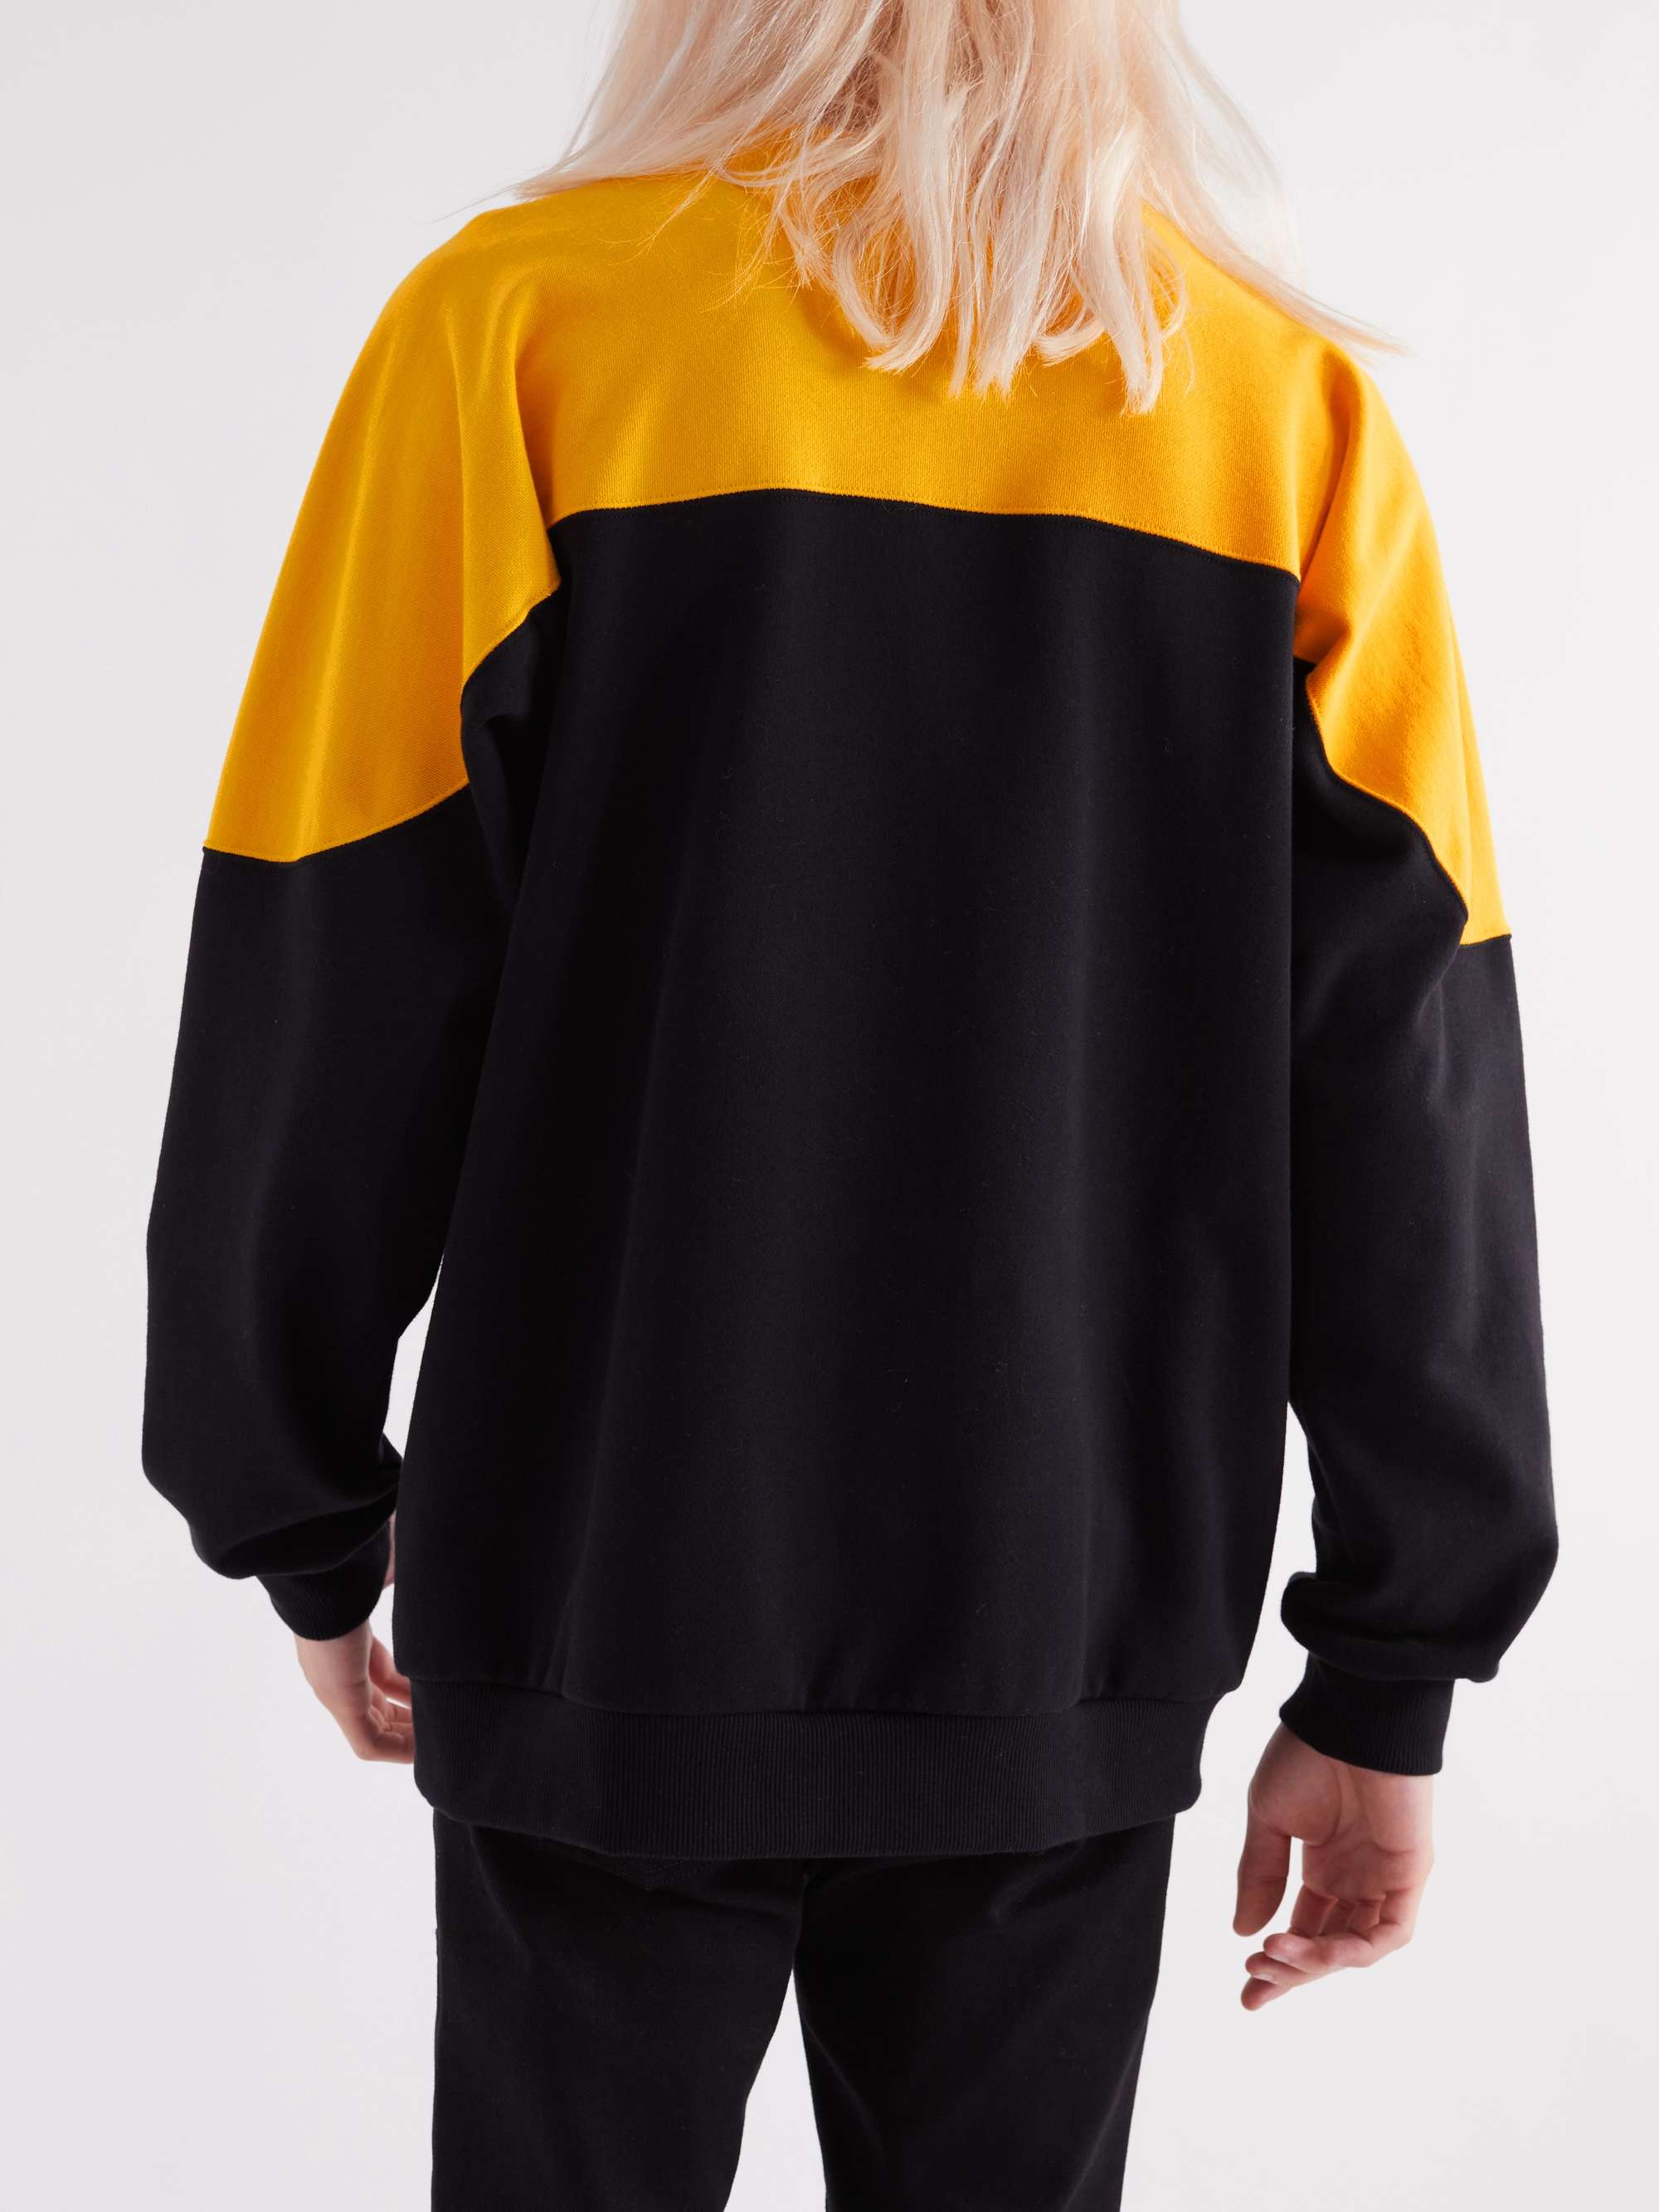 CELINE HOMME Logo-Print Colour-Block Cotton-Blend Jersey Sweatshirt